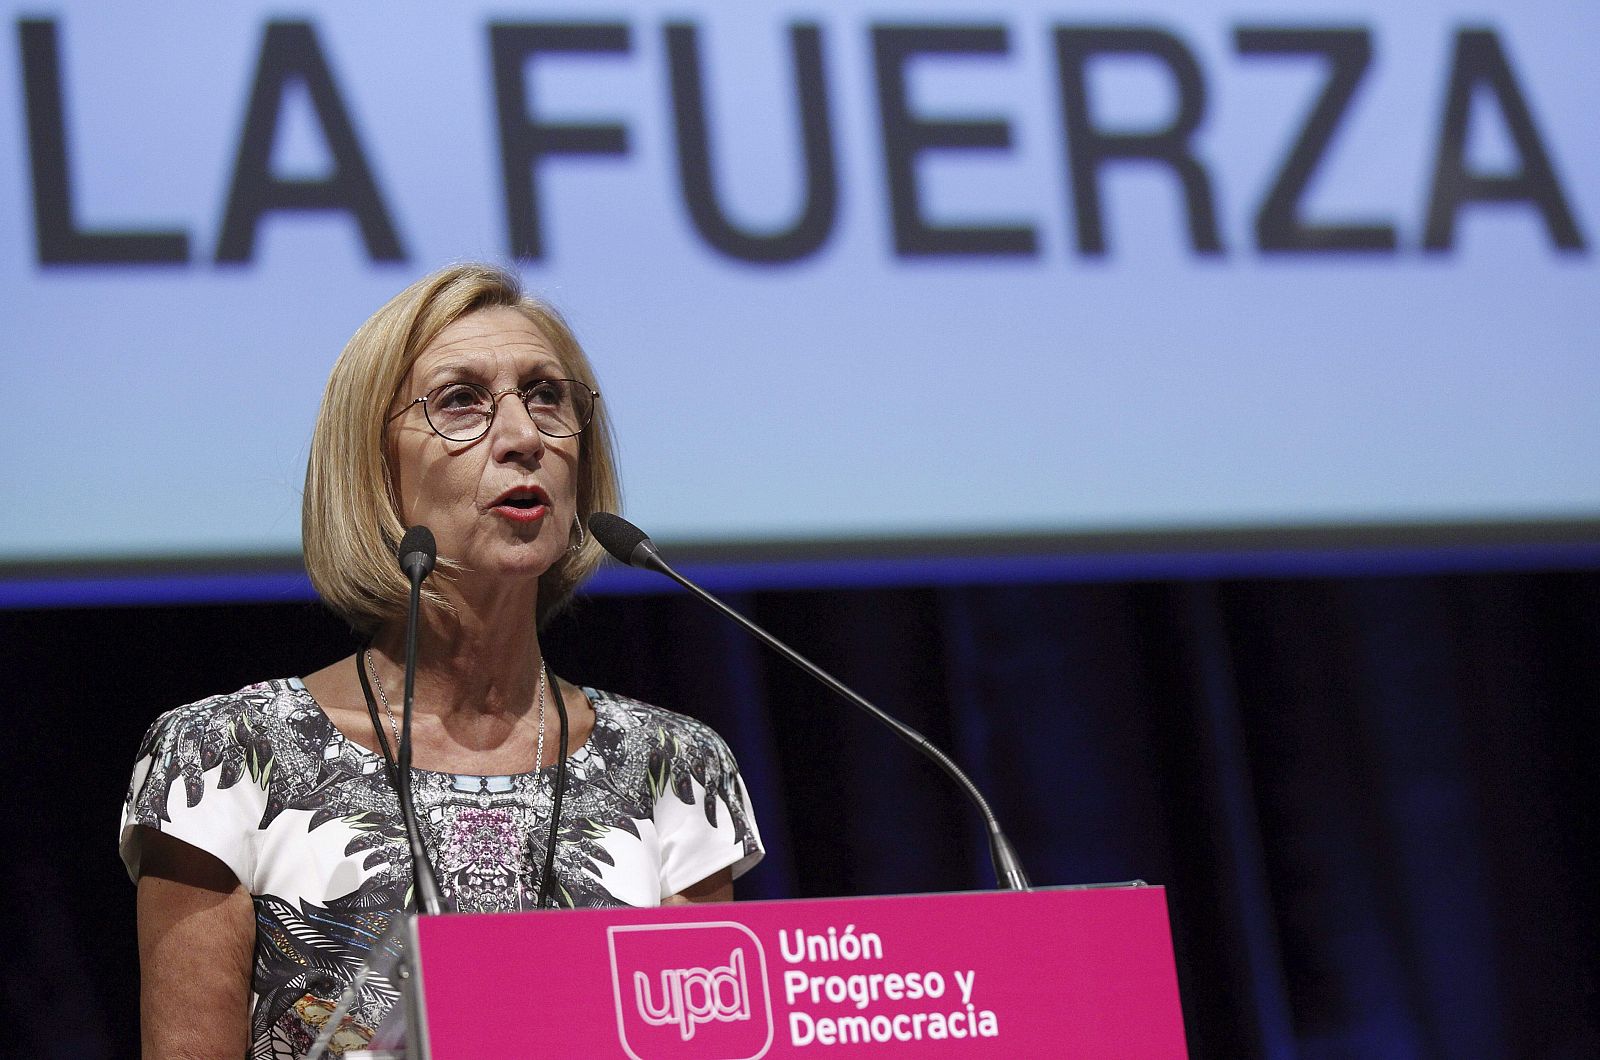 La líder de UPyD, Rosa Díez, durante su intervención en el segundo congreso nacional de Unión, Progreso y Democracia.